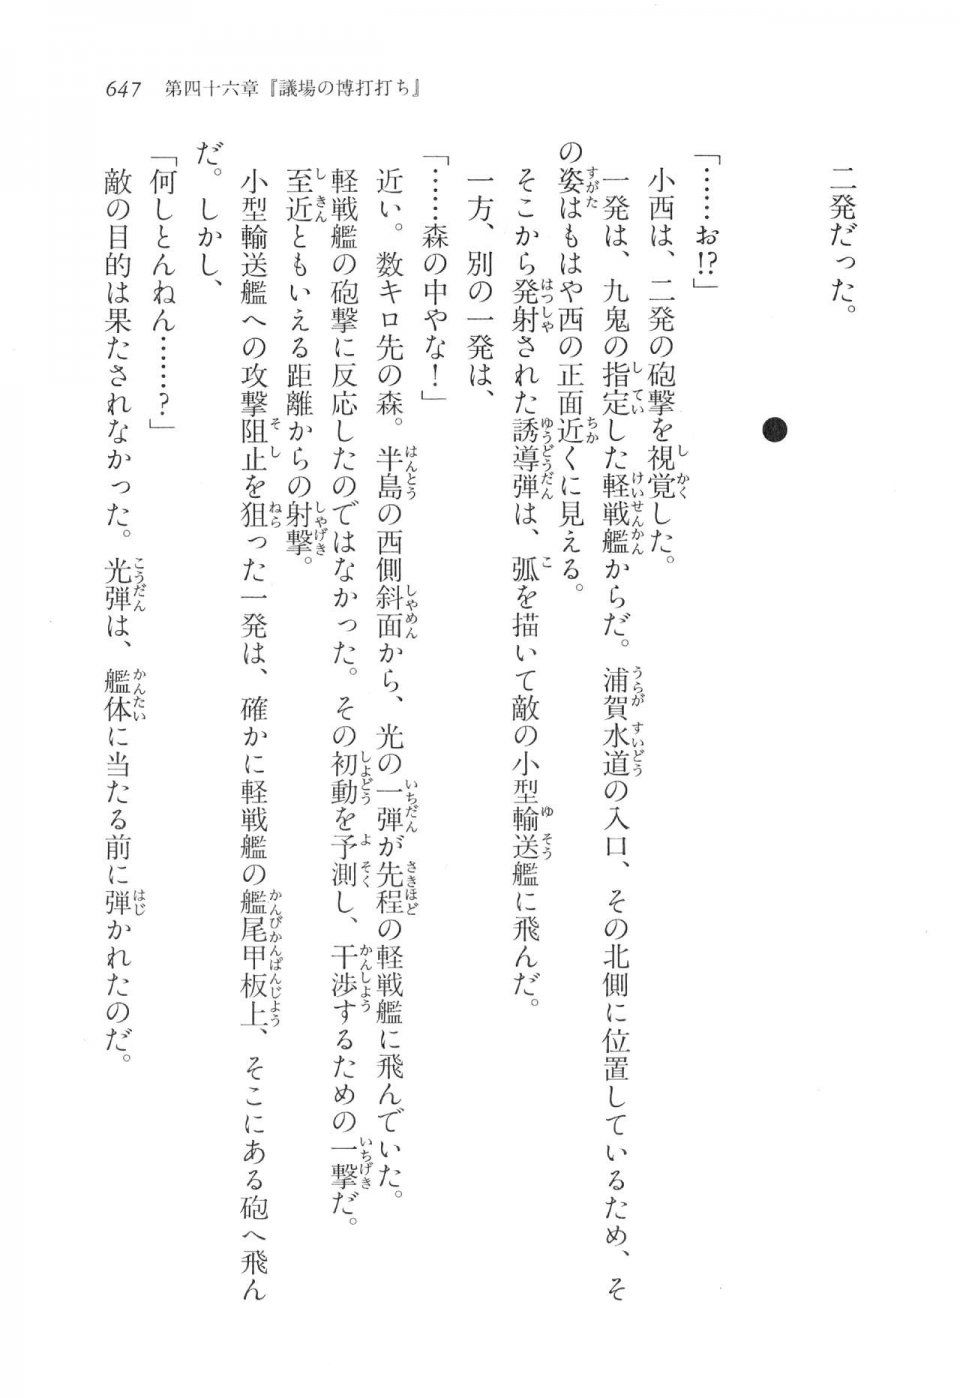 Kyoukai Senjou no Horizon LN Vol 17(7B) - Photo #649